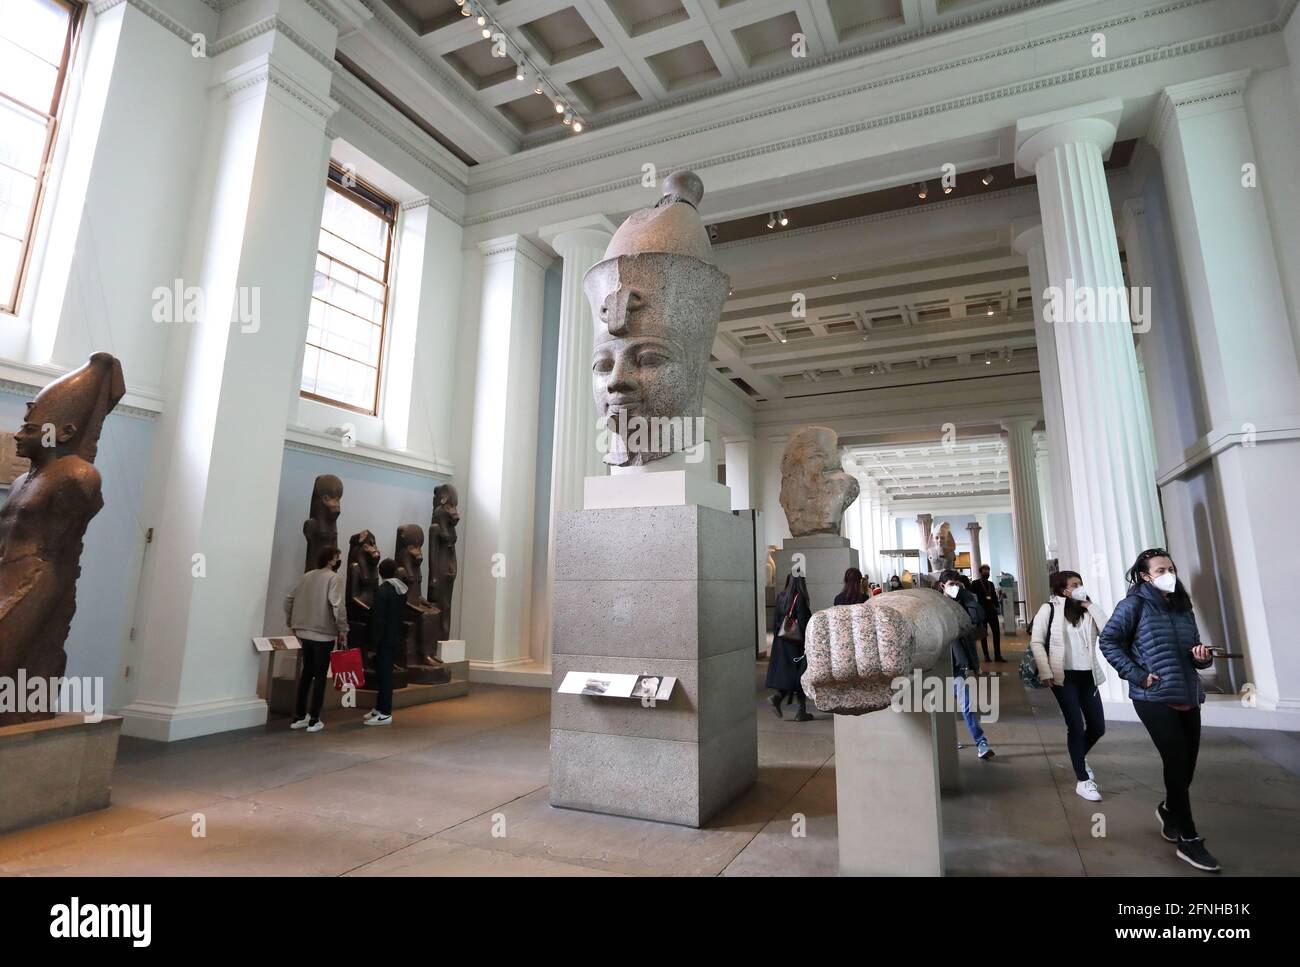 Londra, Regno Unito, 17 maggio 2021. I musei possono riaprirsi il 17 maggio 2021, come parte della prossima fase della roadmap del governo. Molti visitatori sono stati felici di visitare nuovamente il British Museum, indossando maschere e seguendo un sistema a senso unico. Monica Wells/Alamy Live News Foto Stock